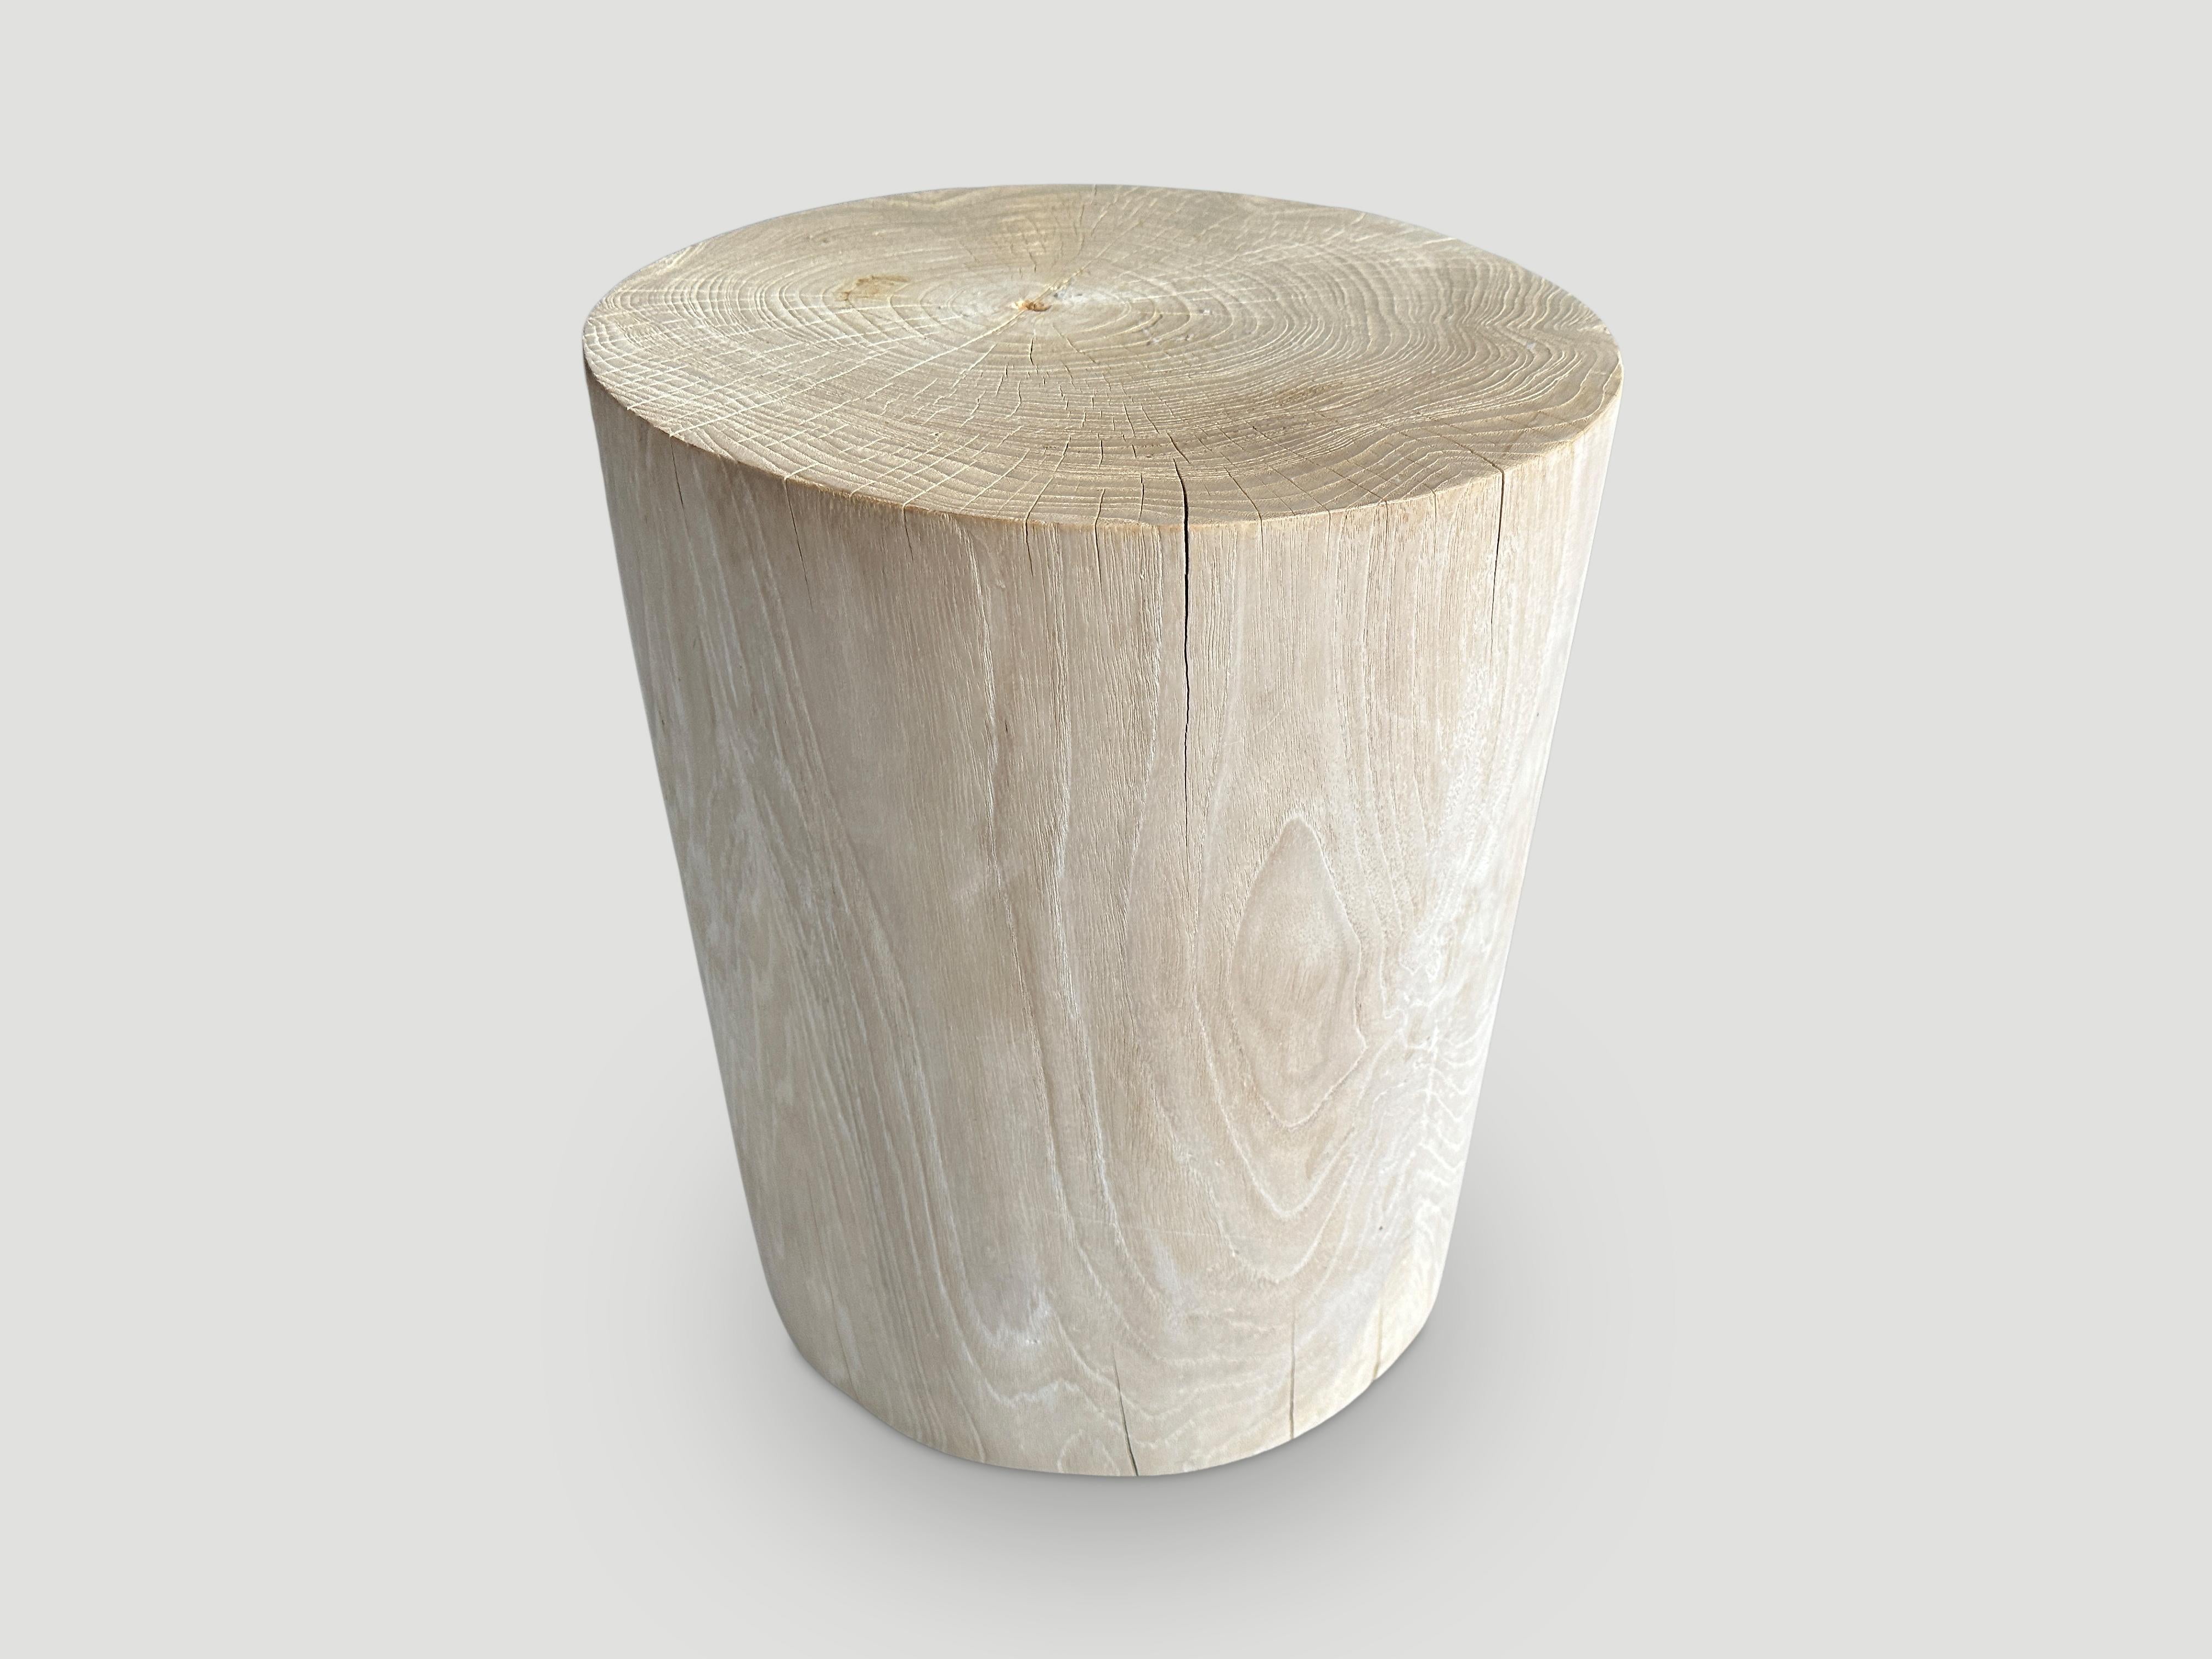 Zylinderförmiger Beistelltisch oder Hocker aus recyceltem Teakholz. Gebleicht und zu einem minimalistischen Zylinder geschnitzt, wobei das natürliche, organische Holz respektiert wird. Auch verkohlt erhältlich. Wir haben eine Collection'S. 

Die St.